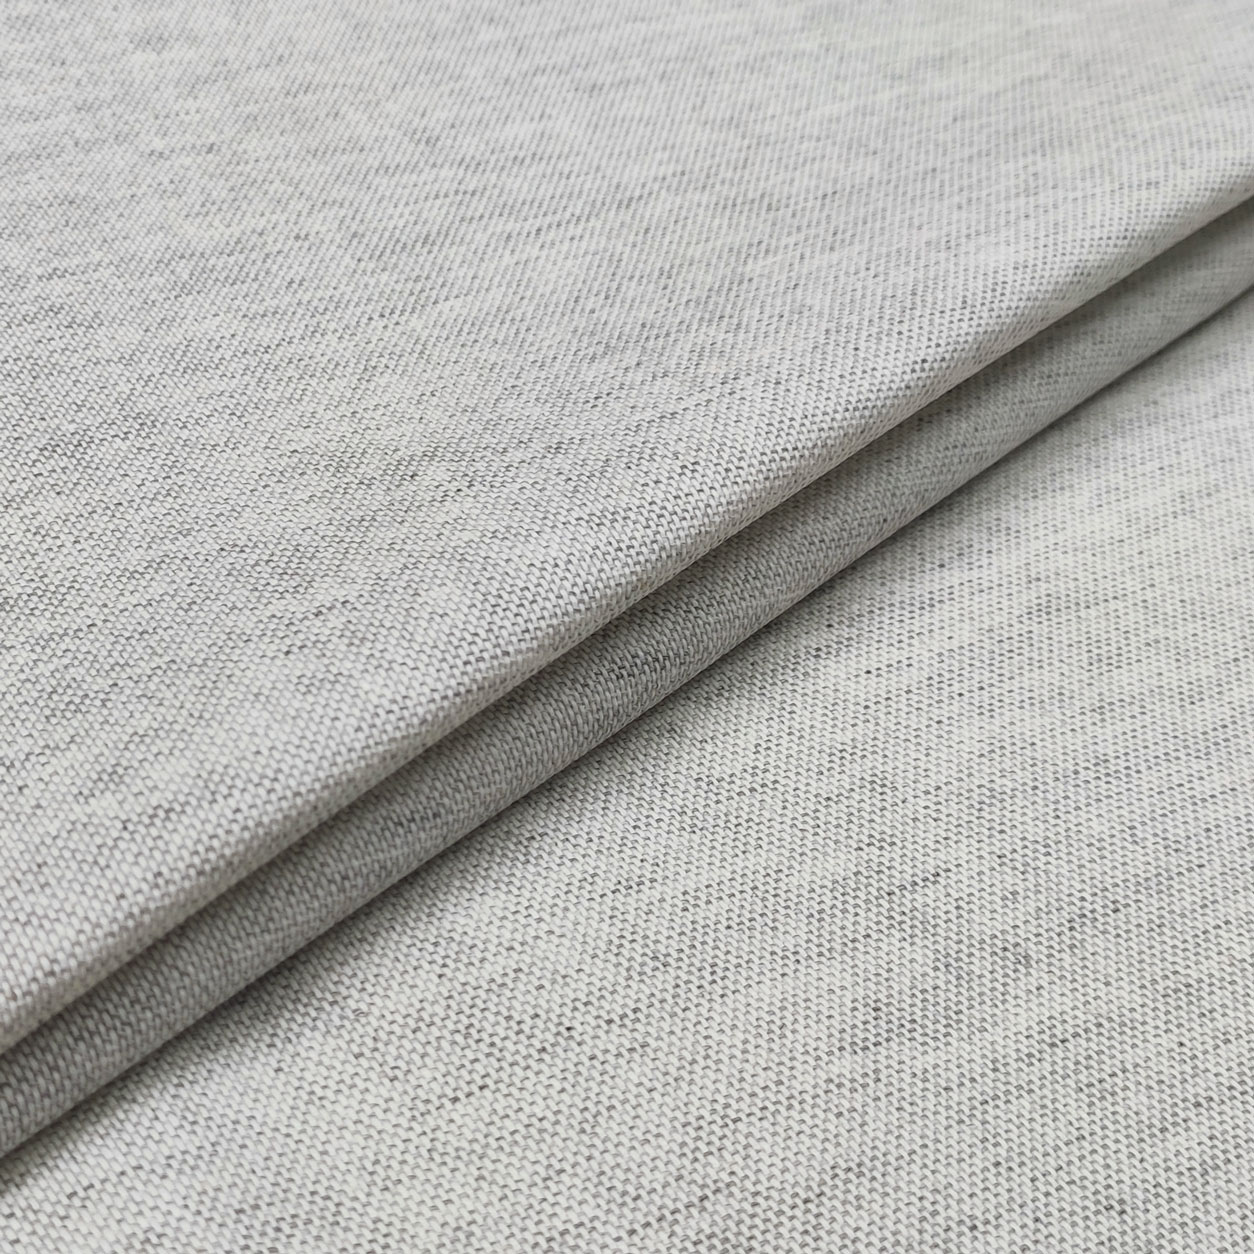 tovaglia resinata bianco grigio melange chiaro dettaglio (2)